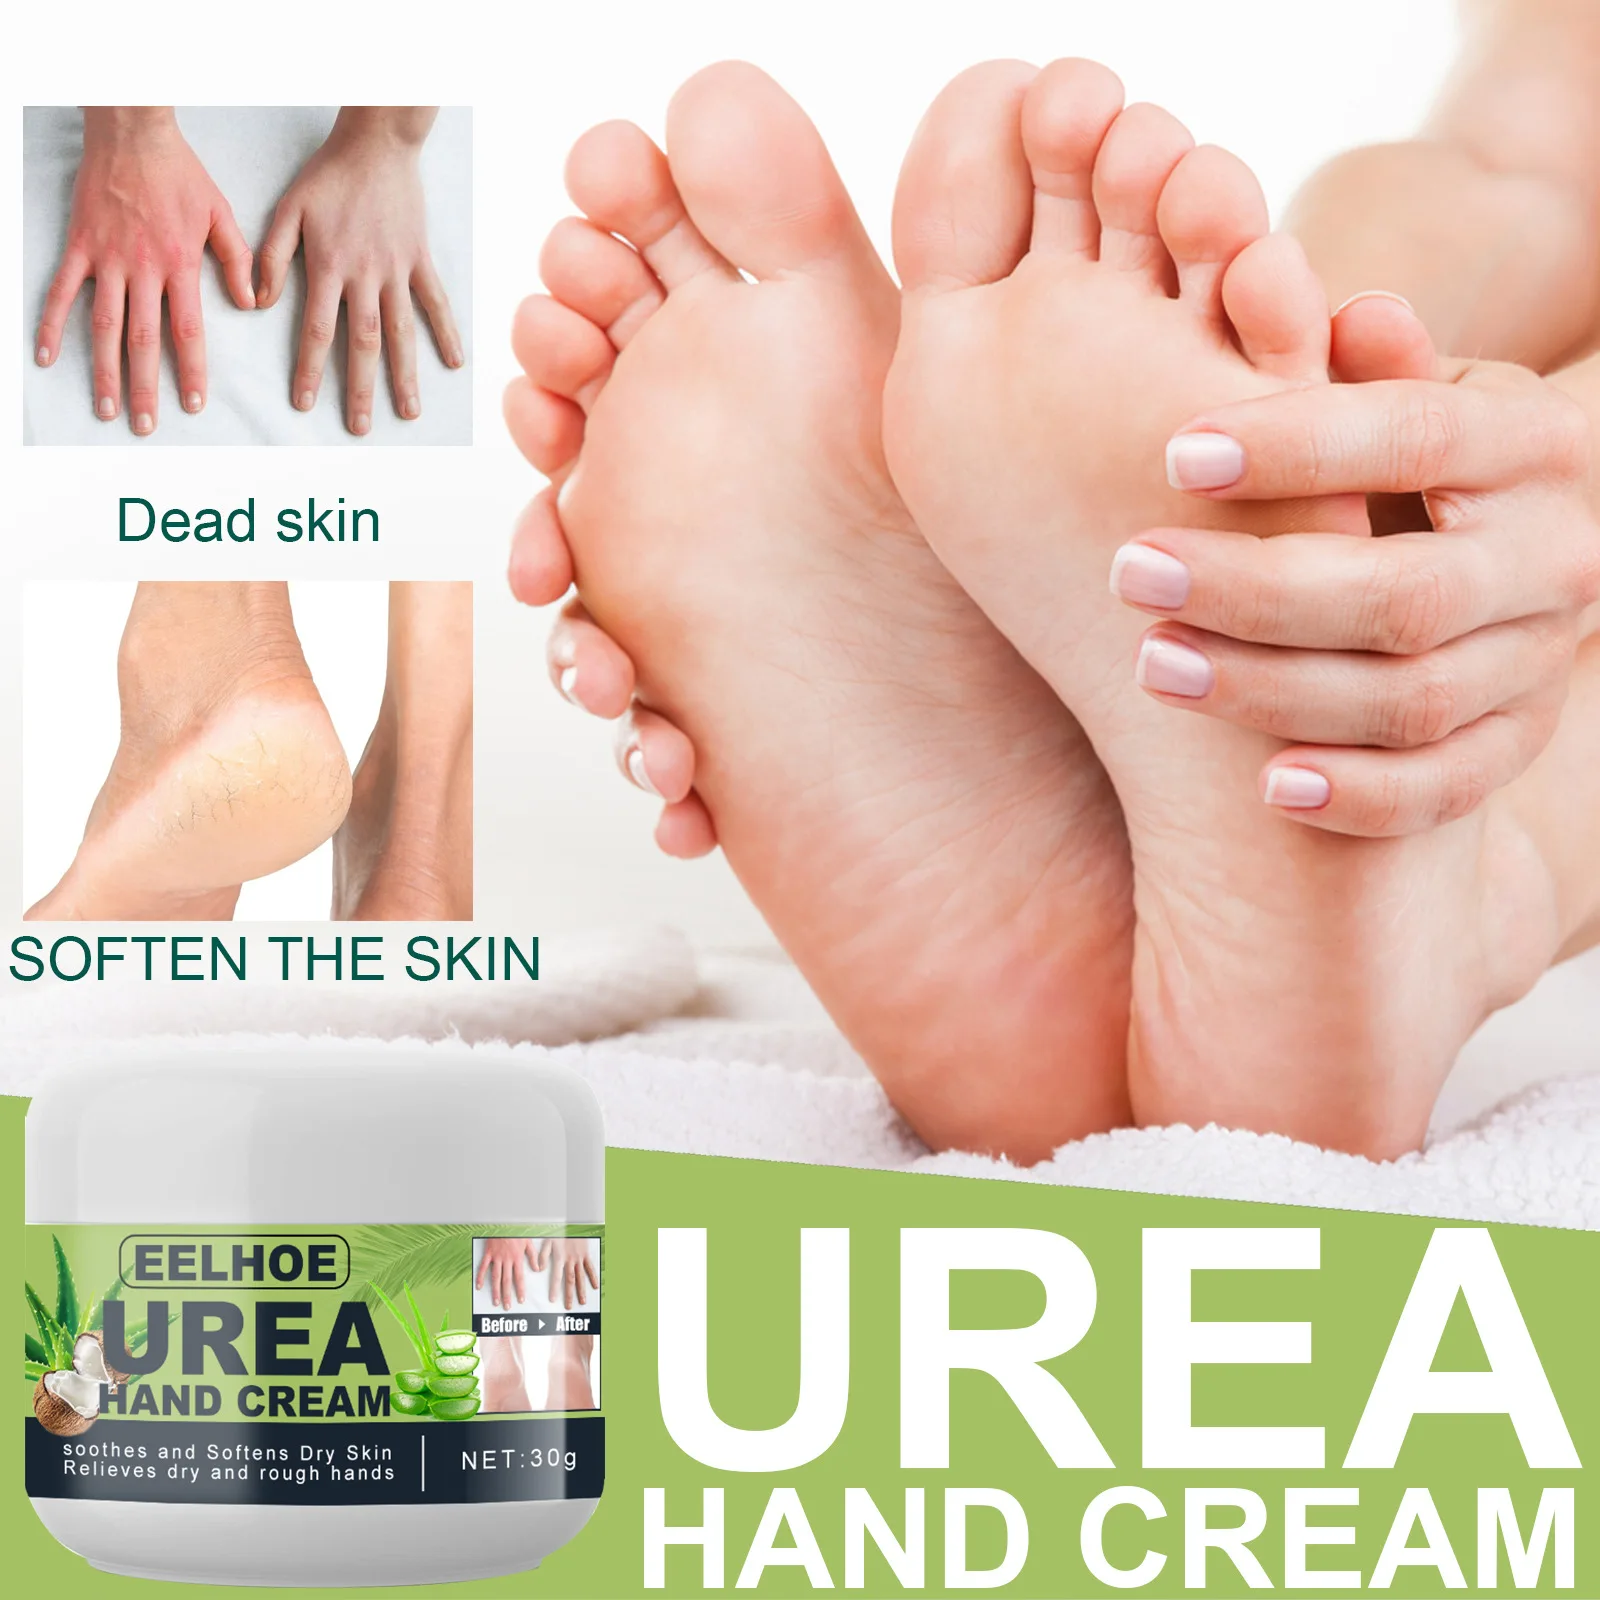 Crema de Urea para manos y pies, crema reparadora de agrietamiento, ácido salicílico, nutre la piel agrietada, elimina la piel muerta